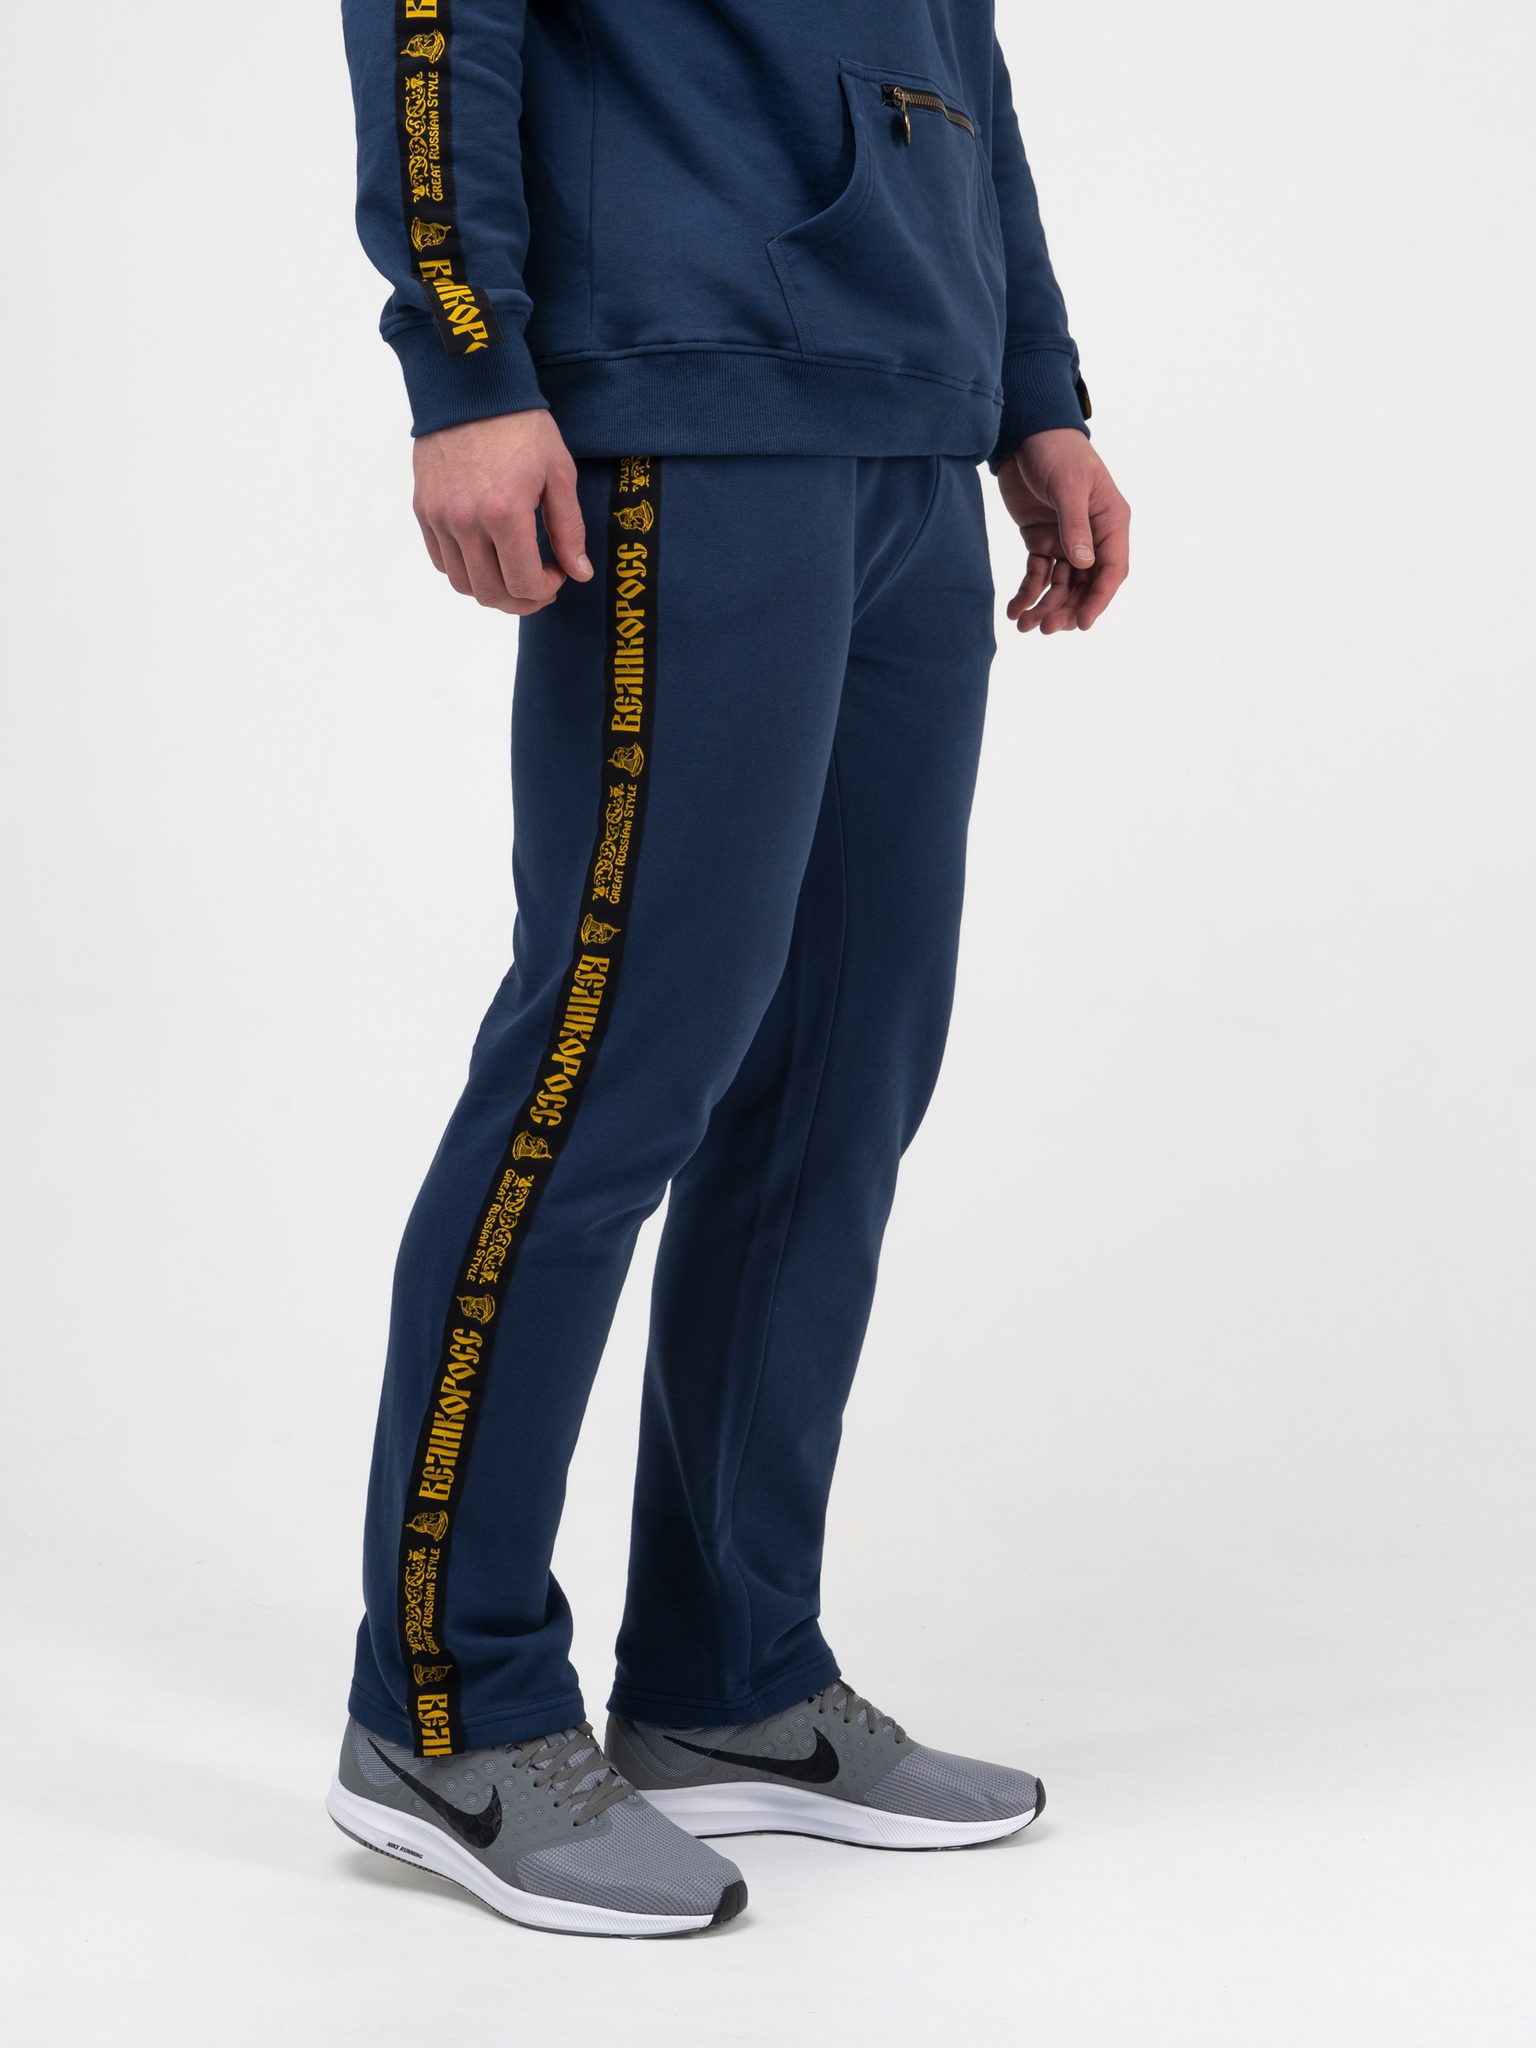 фото Спортивные брюки мужские великоросс чемпион синие 52 ru